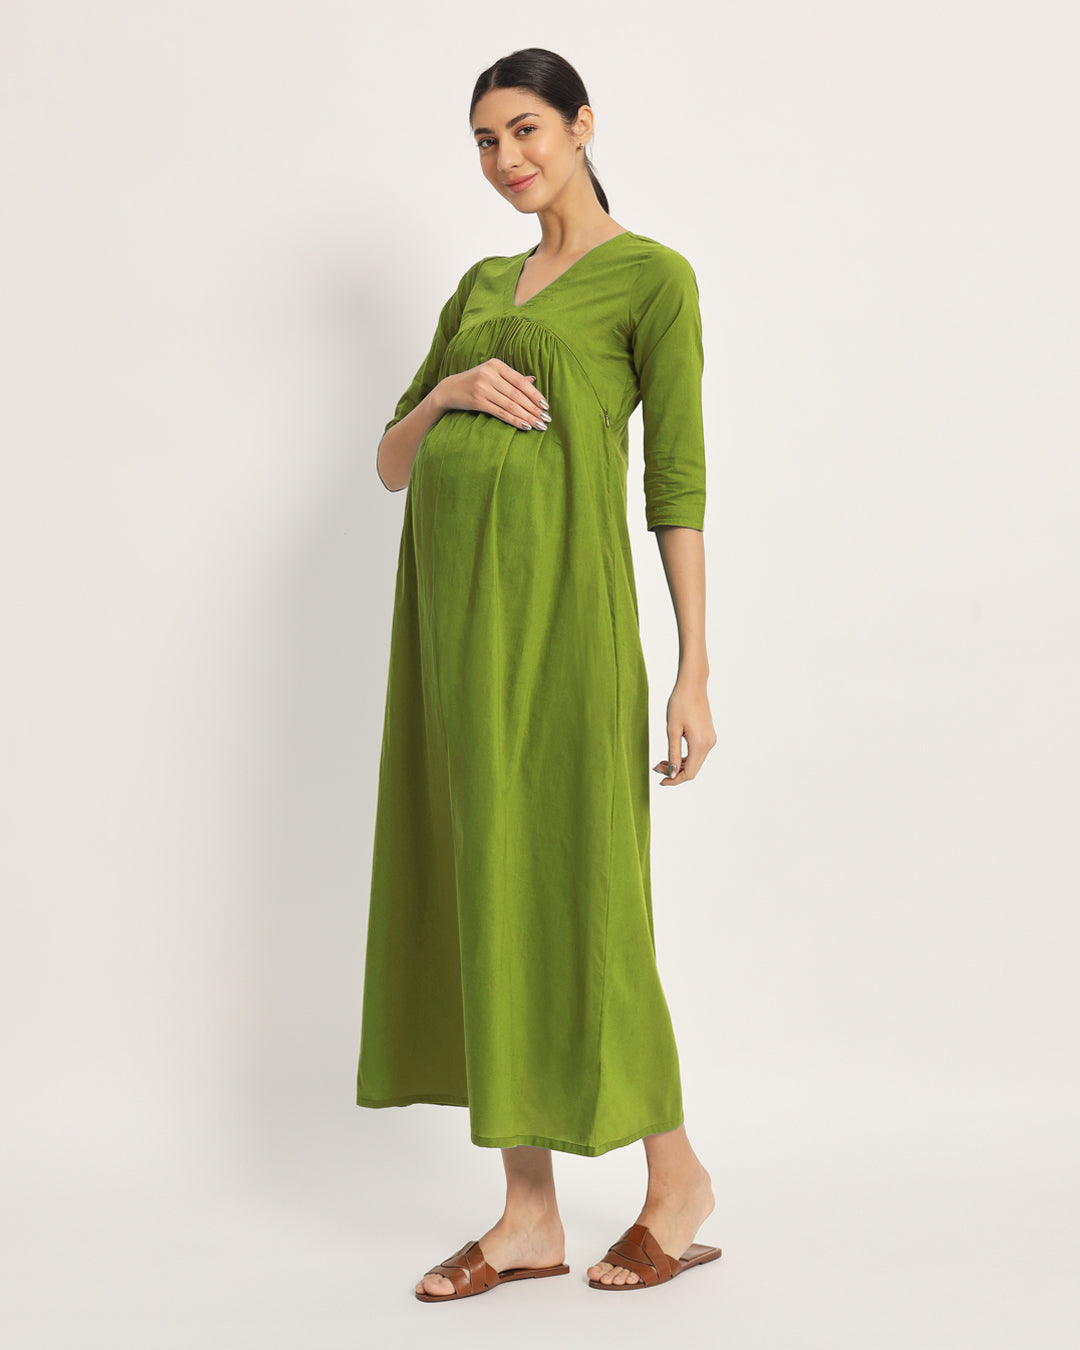 Combo: Iris Pink & Sage Green Bump Comfort Maternity & Nursing Dress - Set of 2